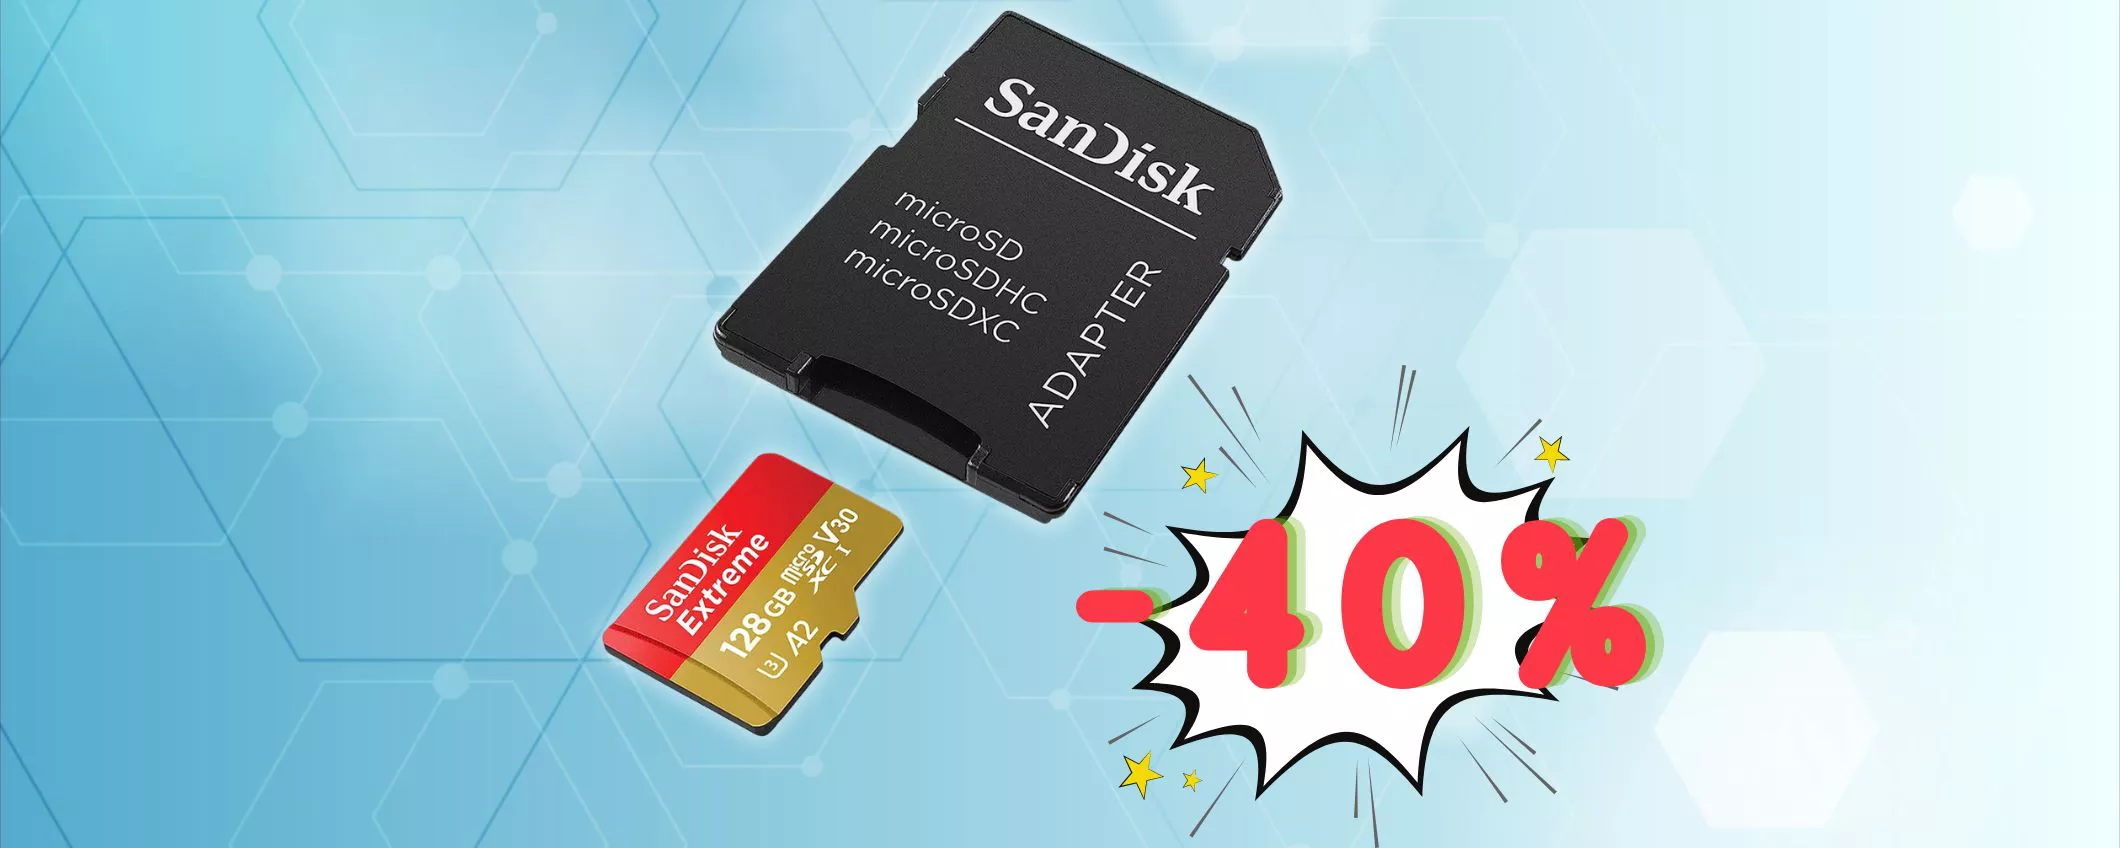 128GB di potenza SanDisk Extreme: un AFFARE a €23,37 (-40%)